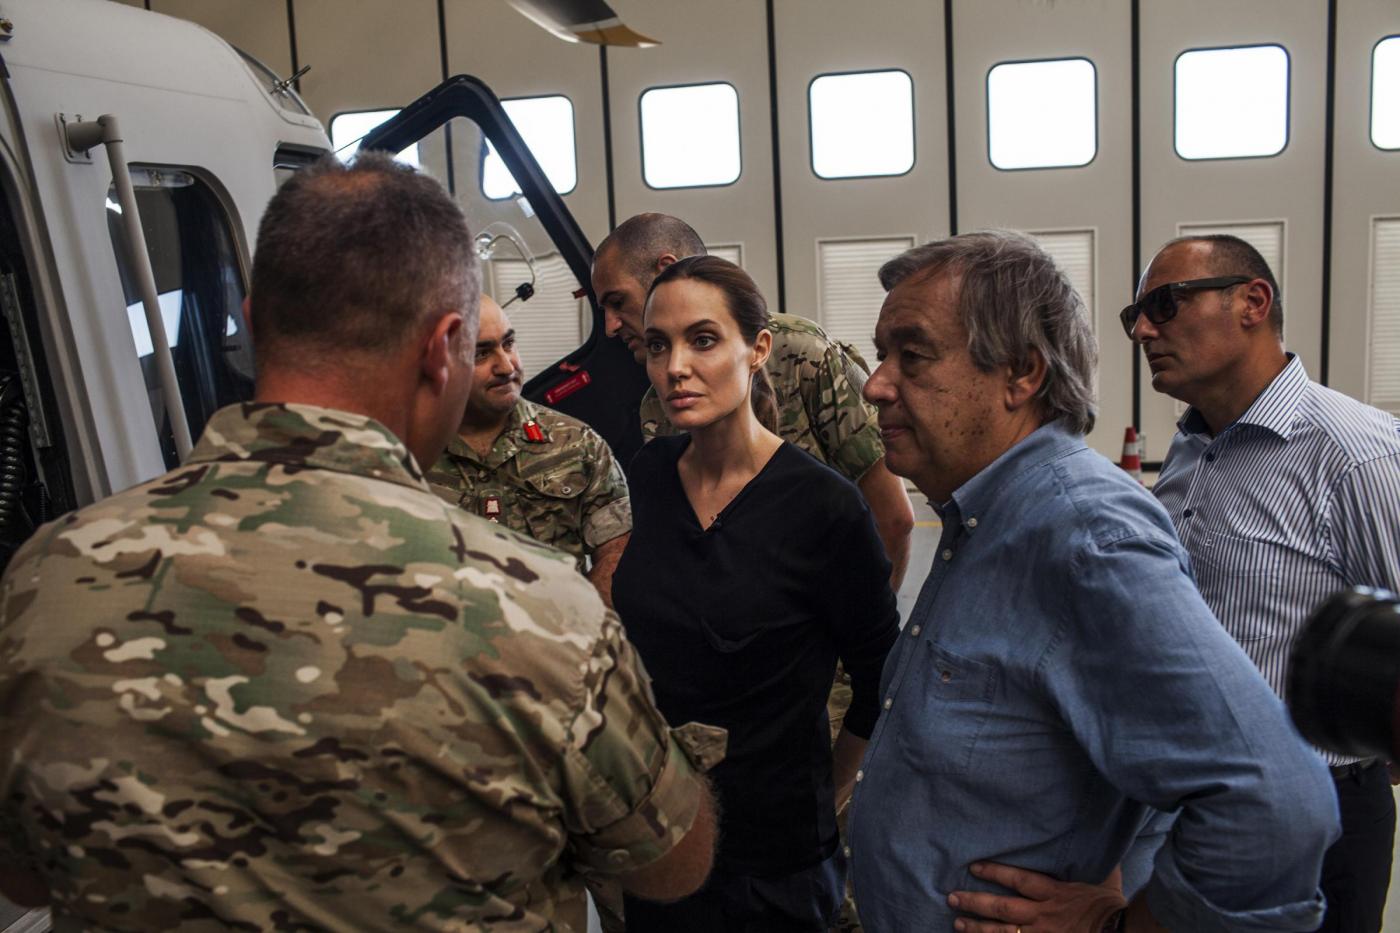 Angelina Jolie visita profughi a Malta. Per Il Giornale: "una passerella Vip"